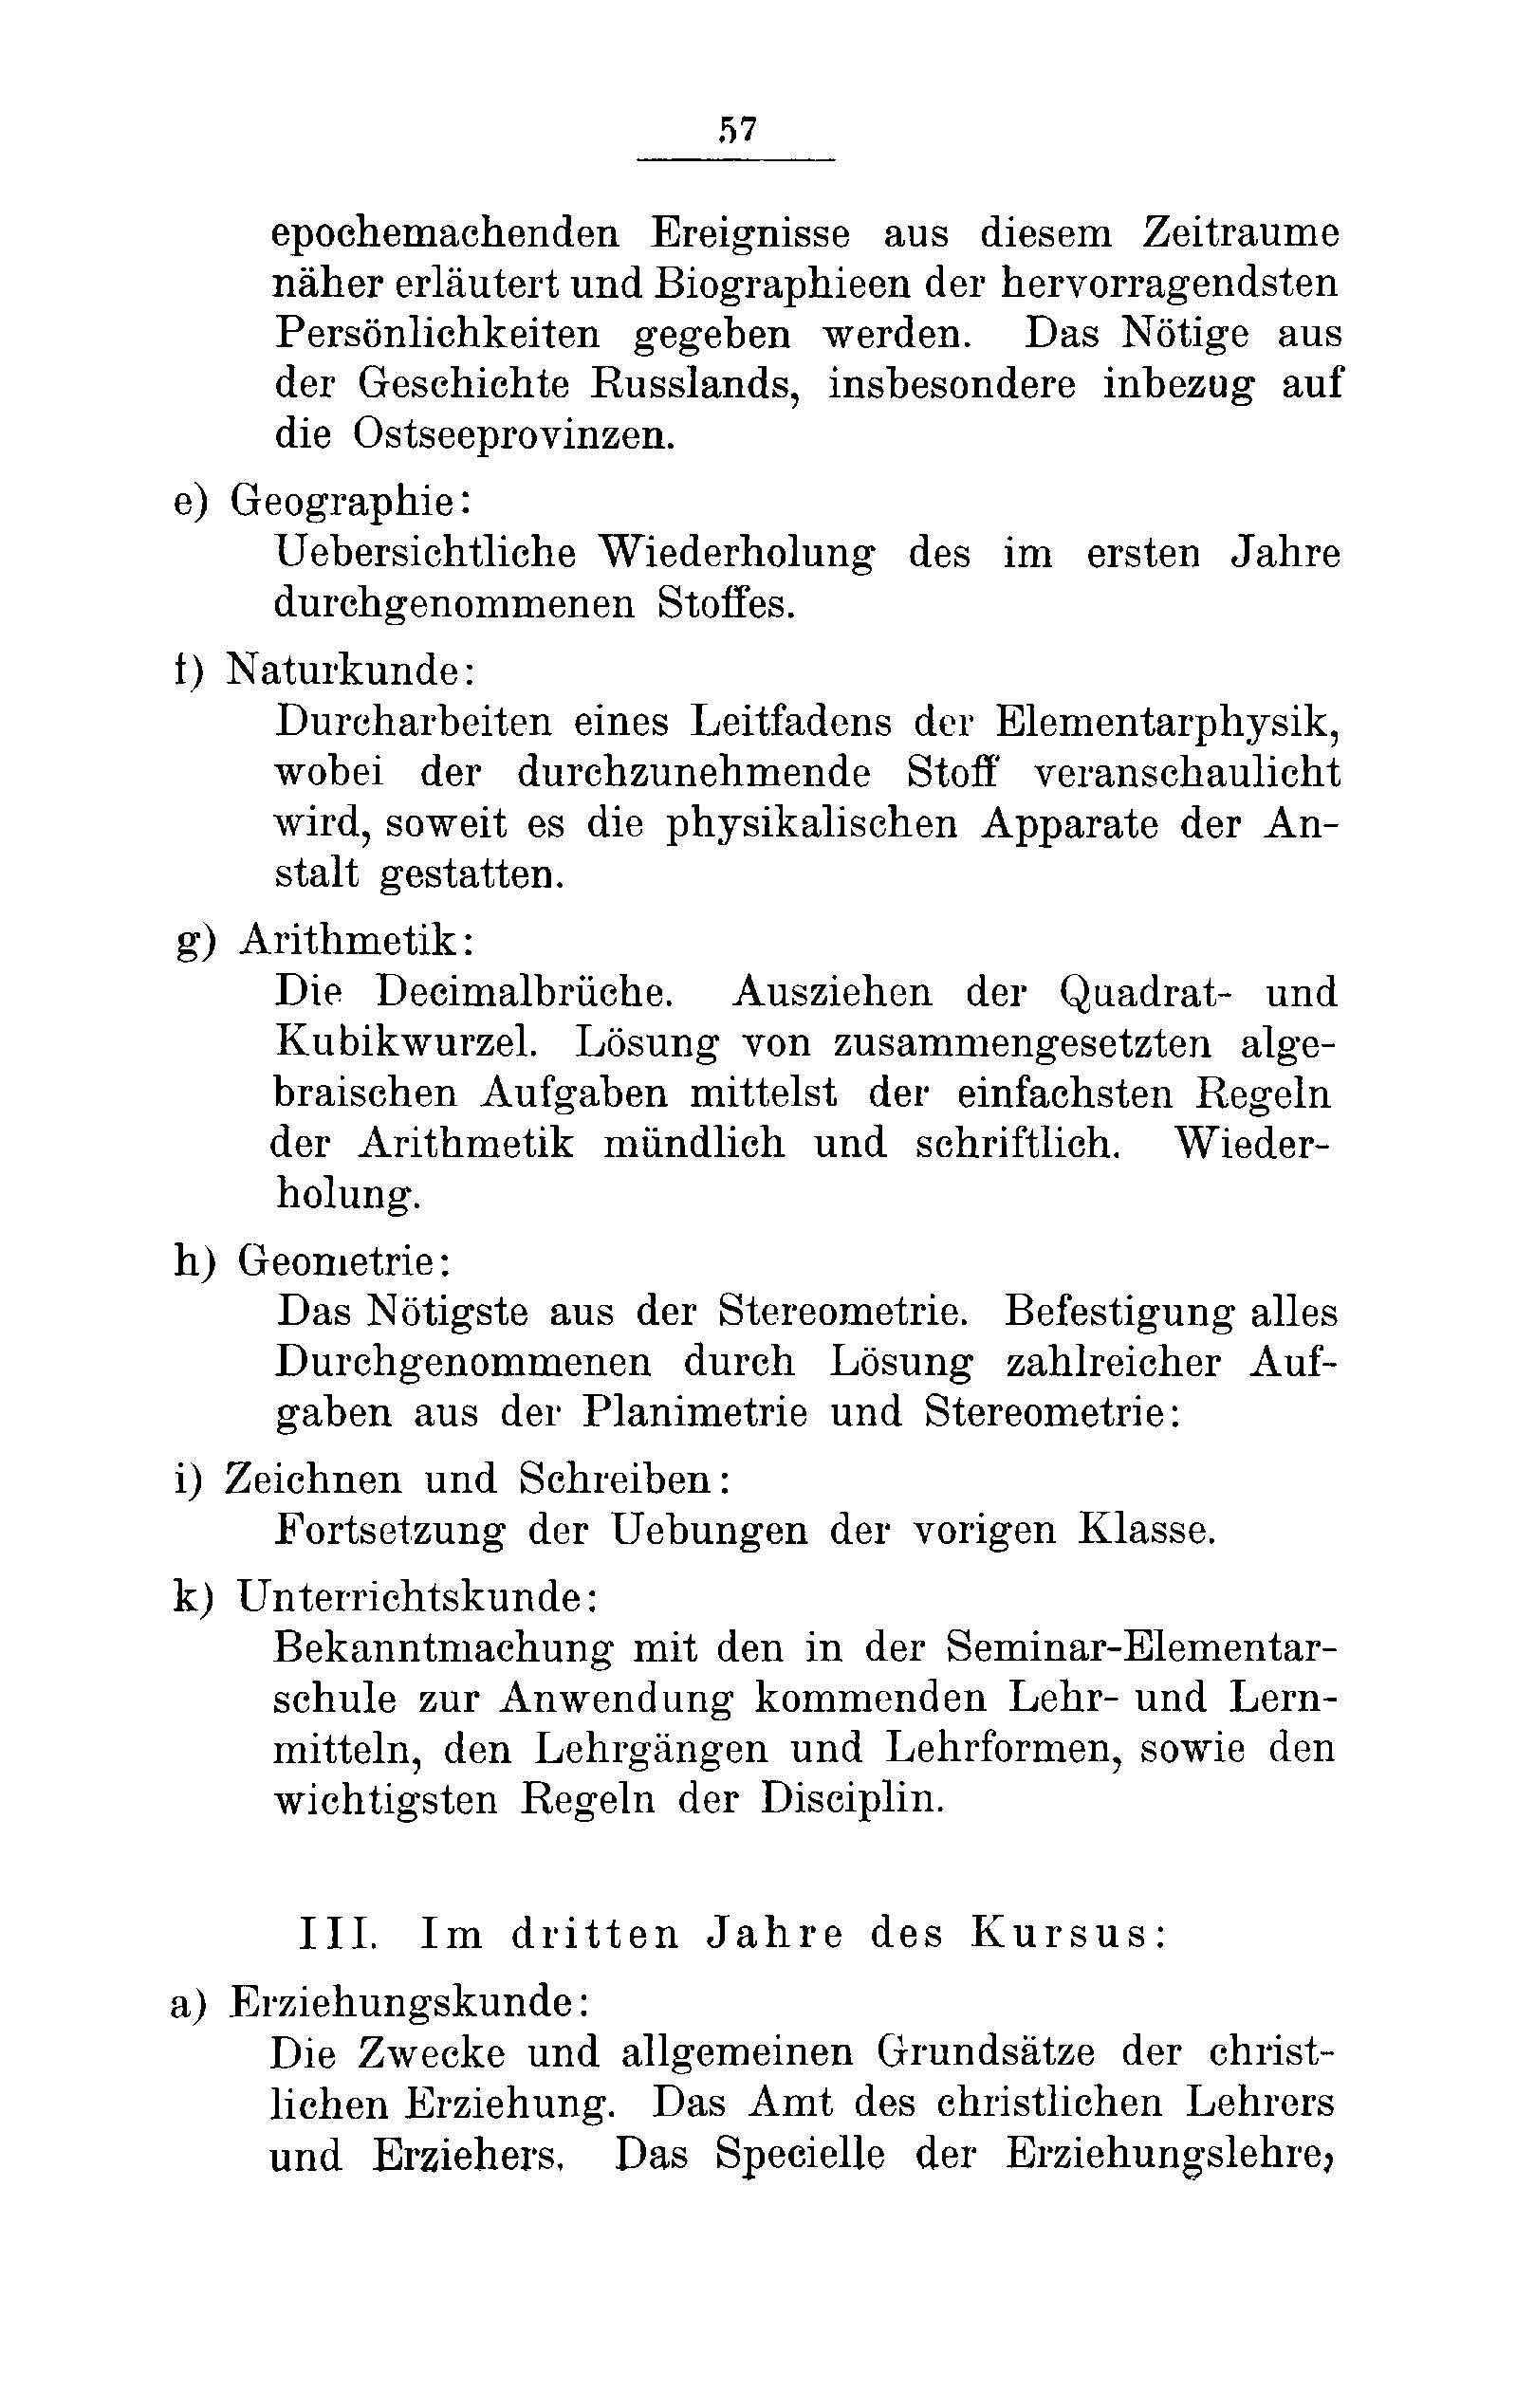 Das Erste Dorpatsche Lehrer-Seminar (1890) | 60. Haupttext